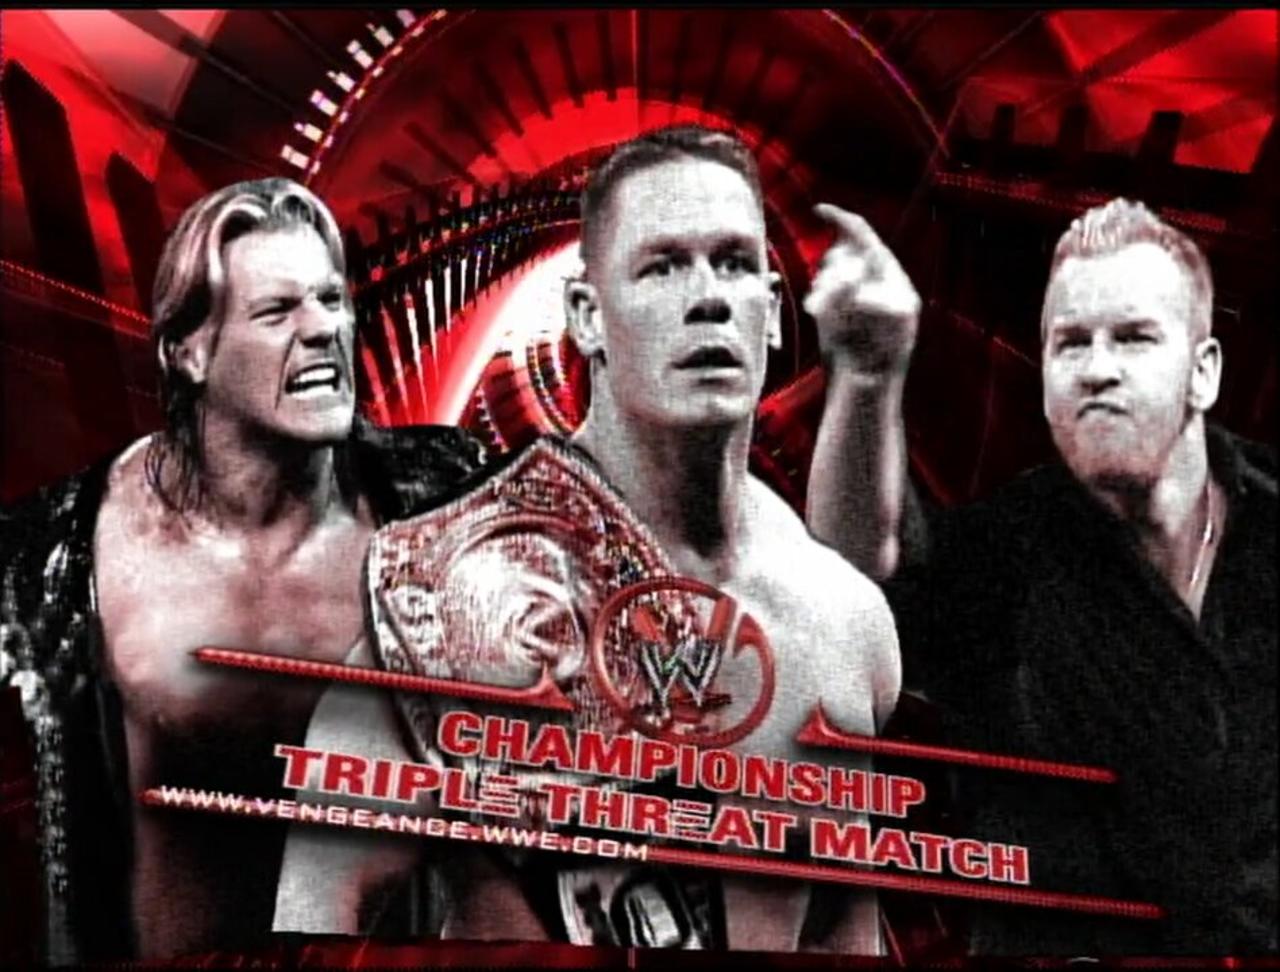 John Cena v Chris Jericho v Christian Vengeance 2005 FULL MATCH